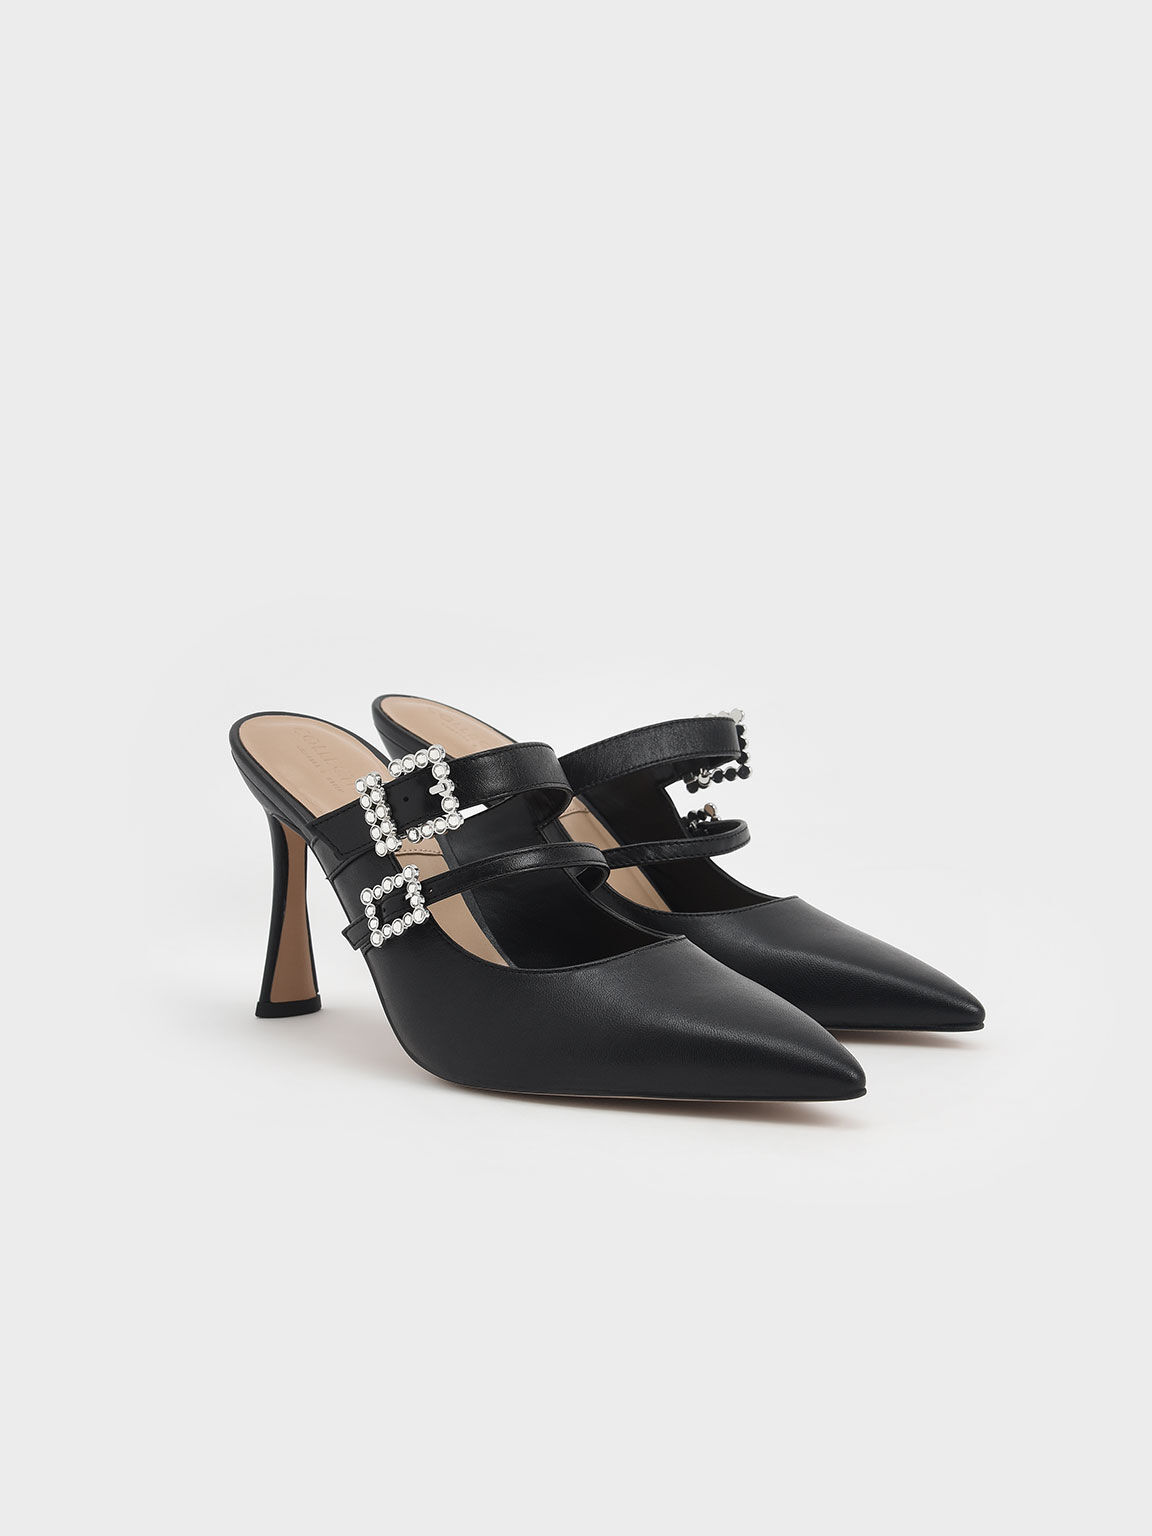 Leather Gem-Embellished Stiletto Mules, Black, hi-res